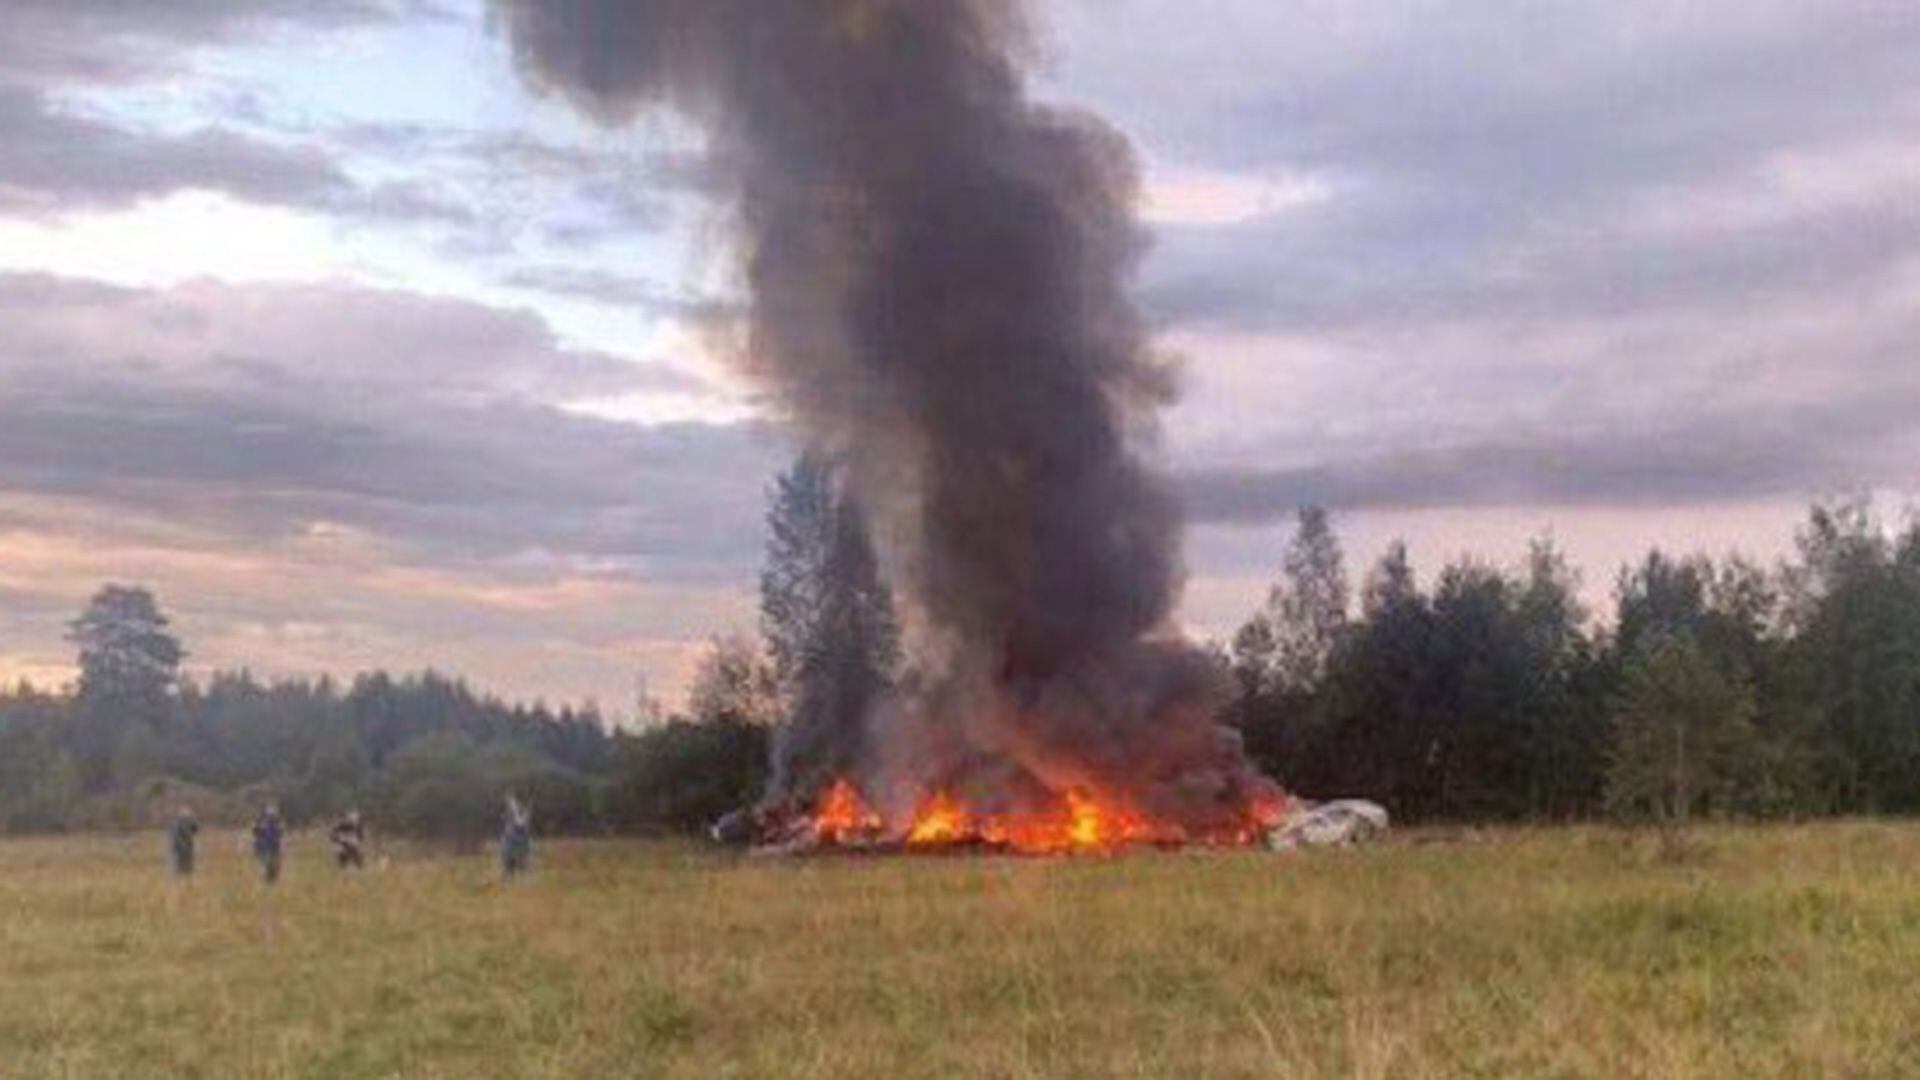 Los restos del avión donde supuestamente viajaba Prigozhin ardiendo en la campiña de las afueras de Moscú. (X vía Reuters)